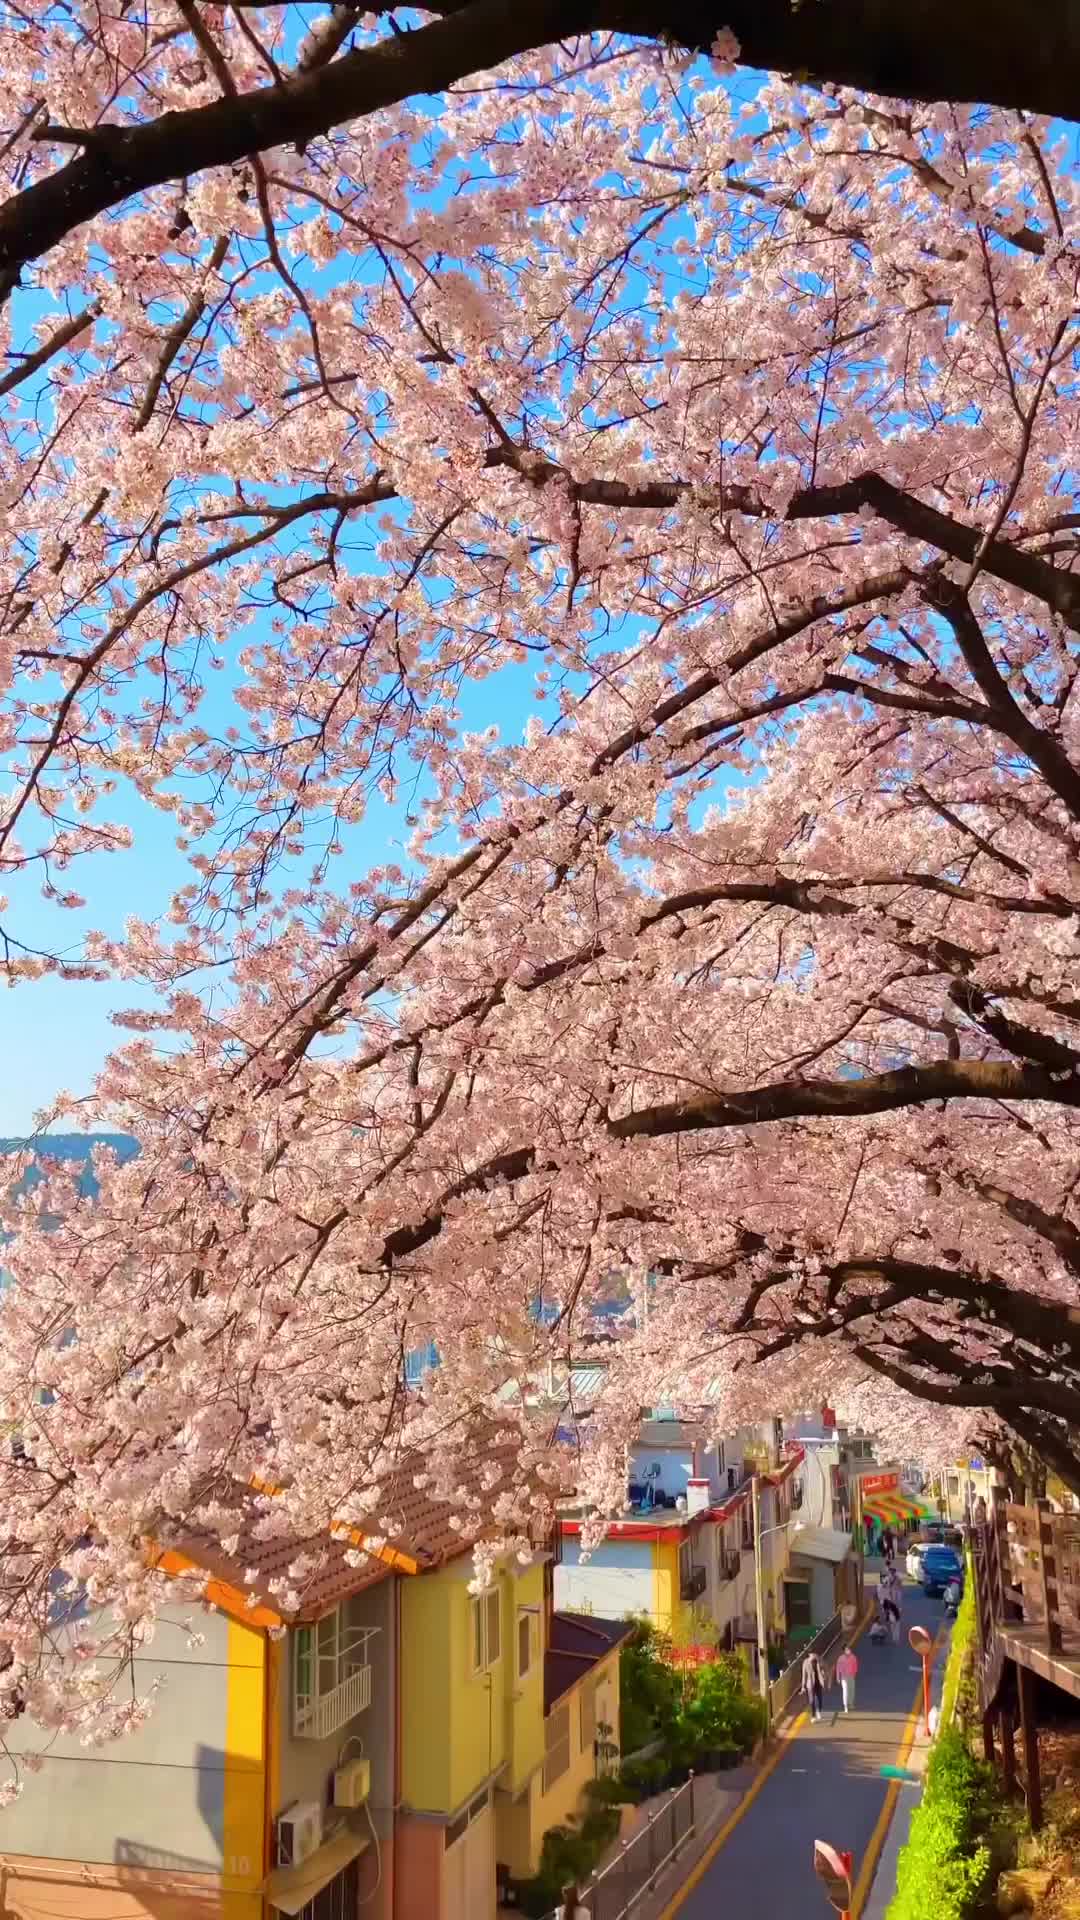 부산 개금동 벚꽃명소 - 봄의 정취를 느껴보세요